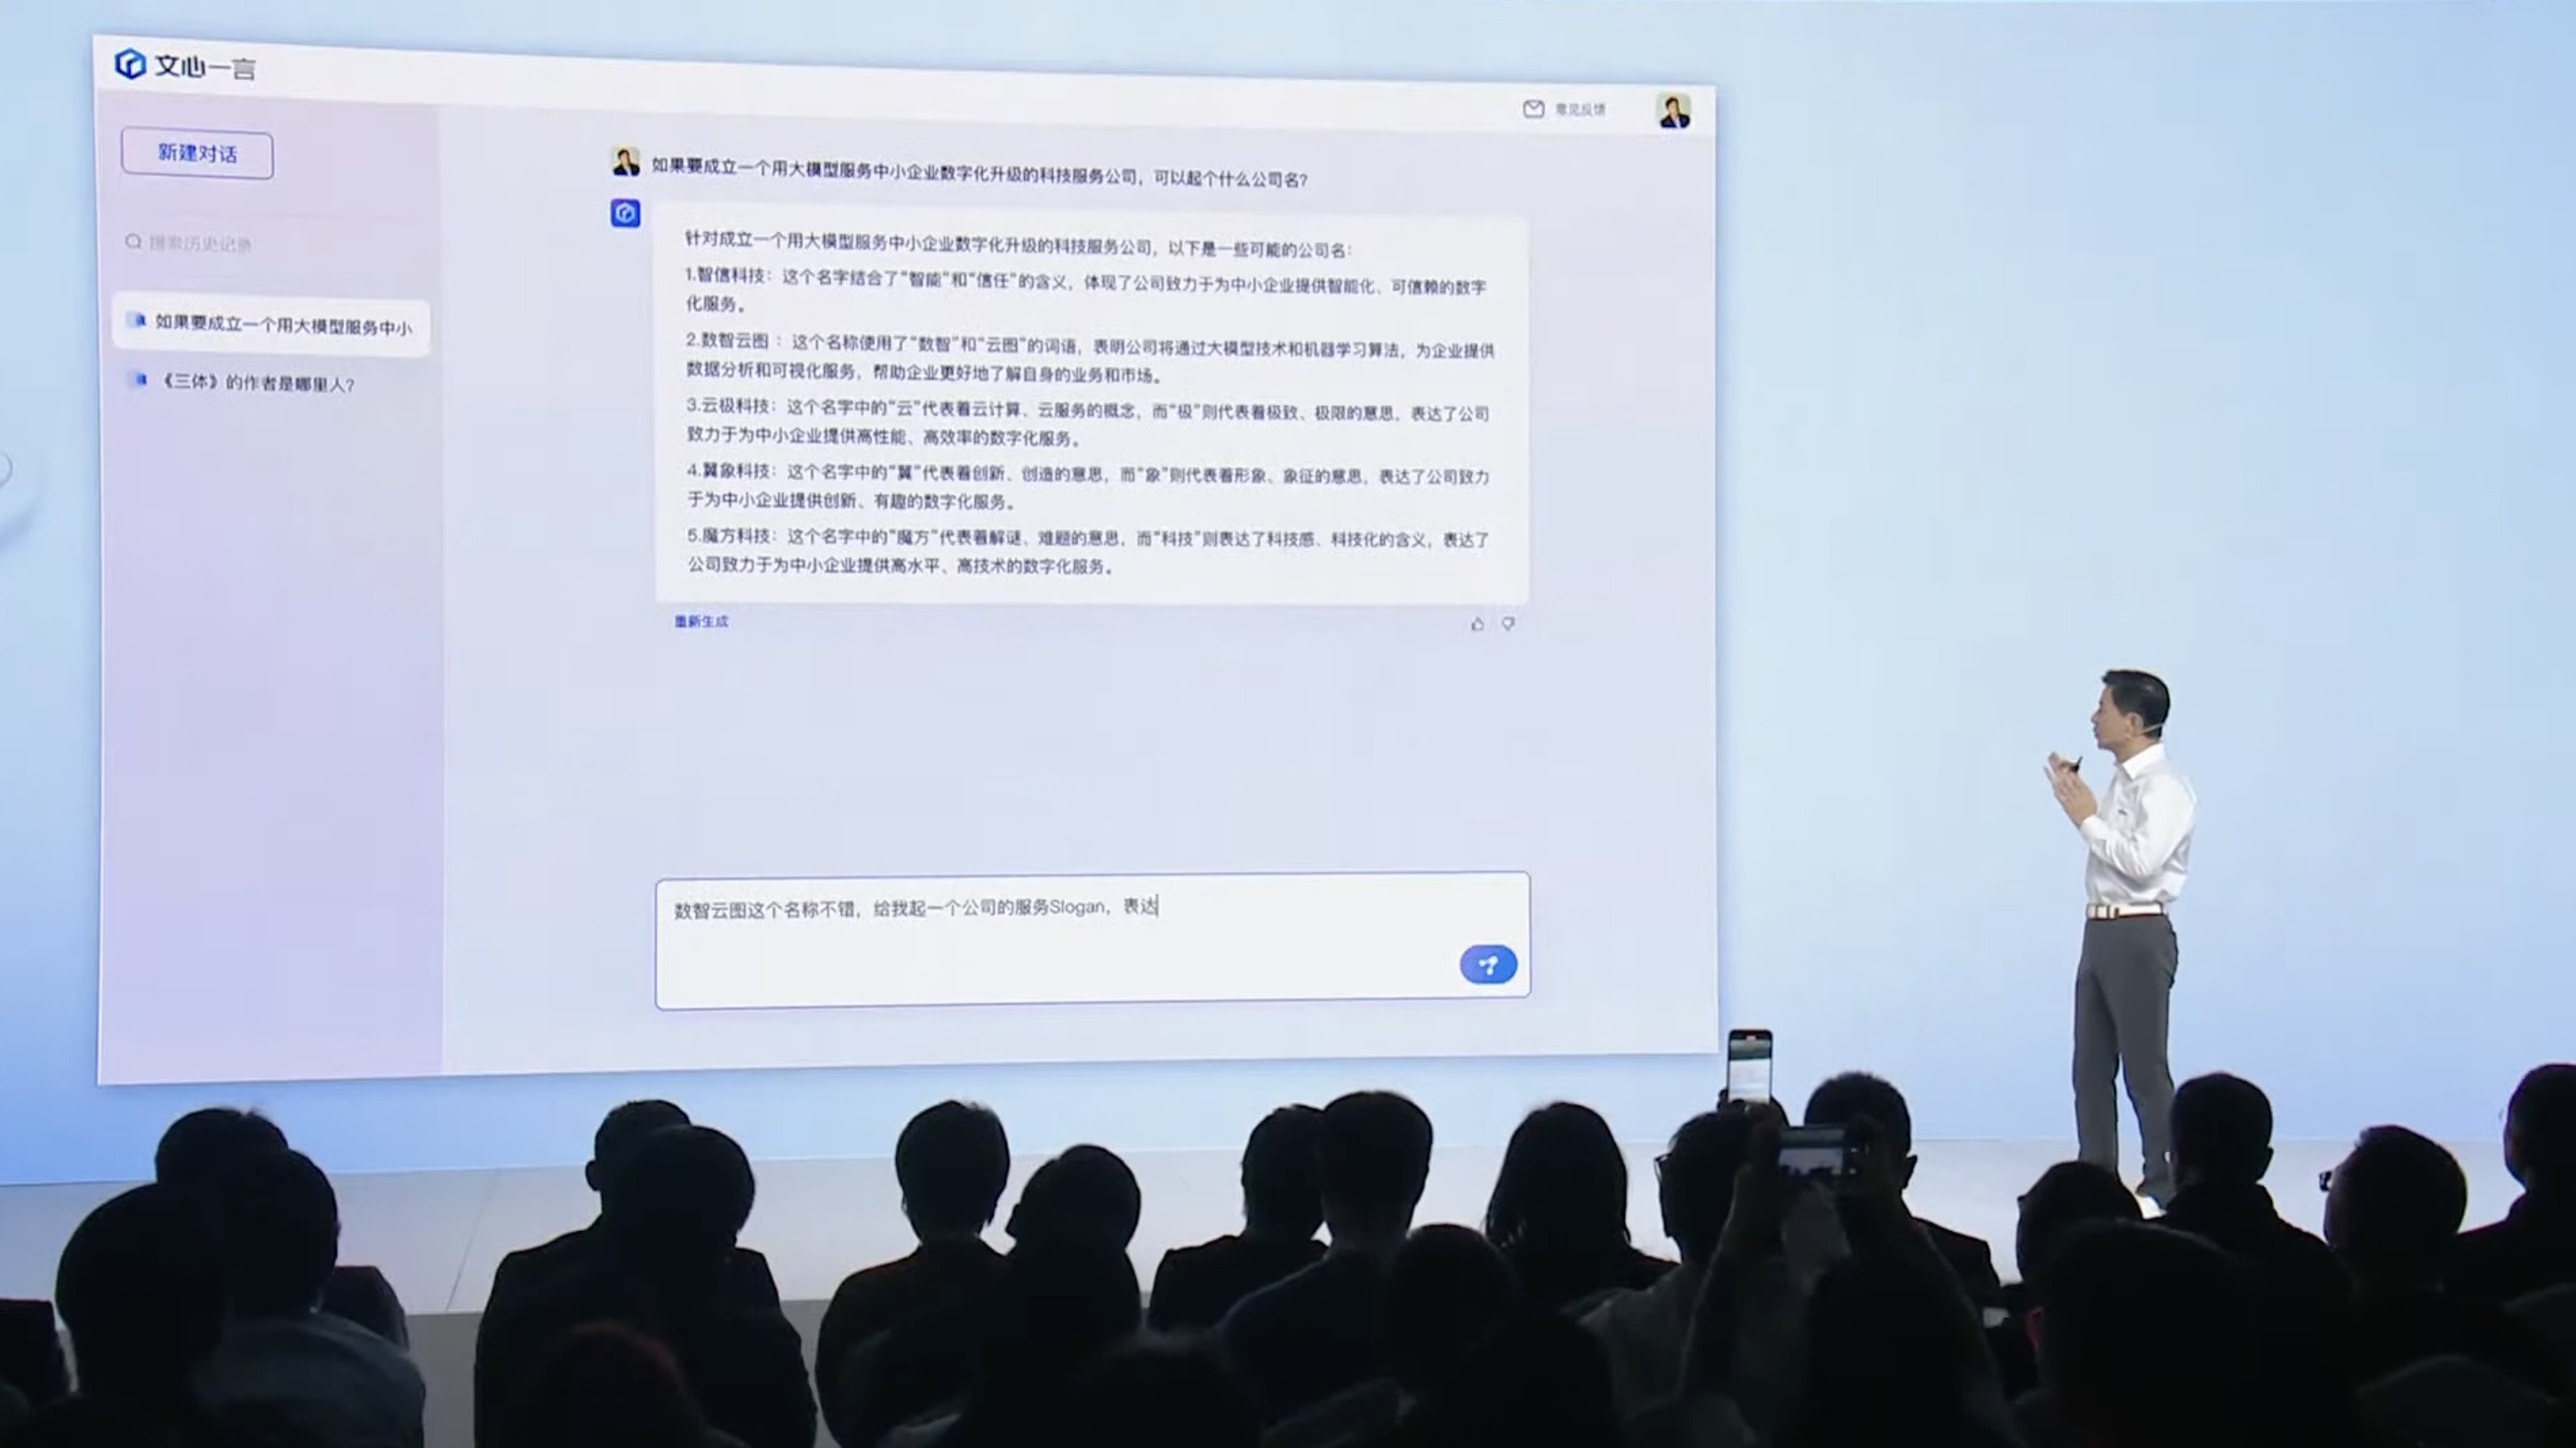 Apresentação da Baidu sobre tecnologia de IA